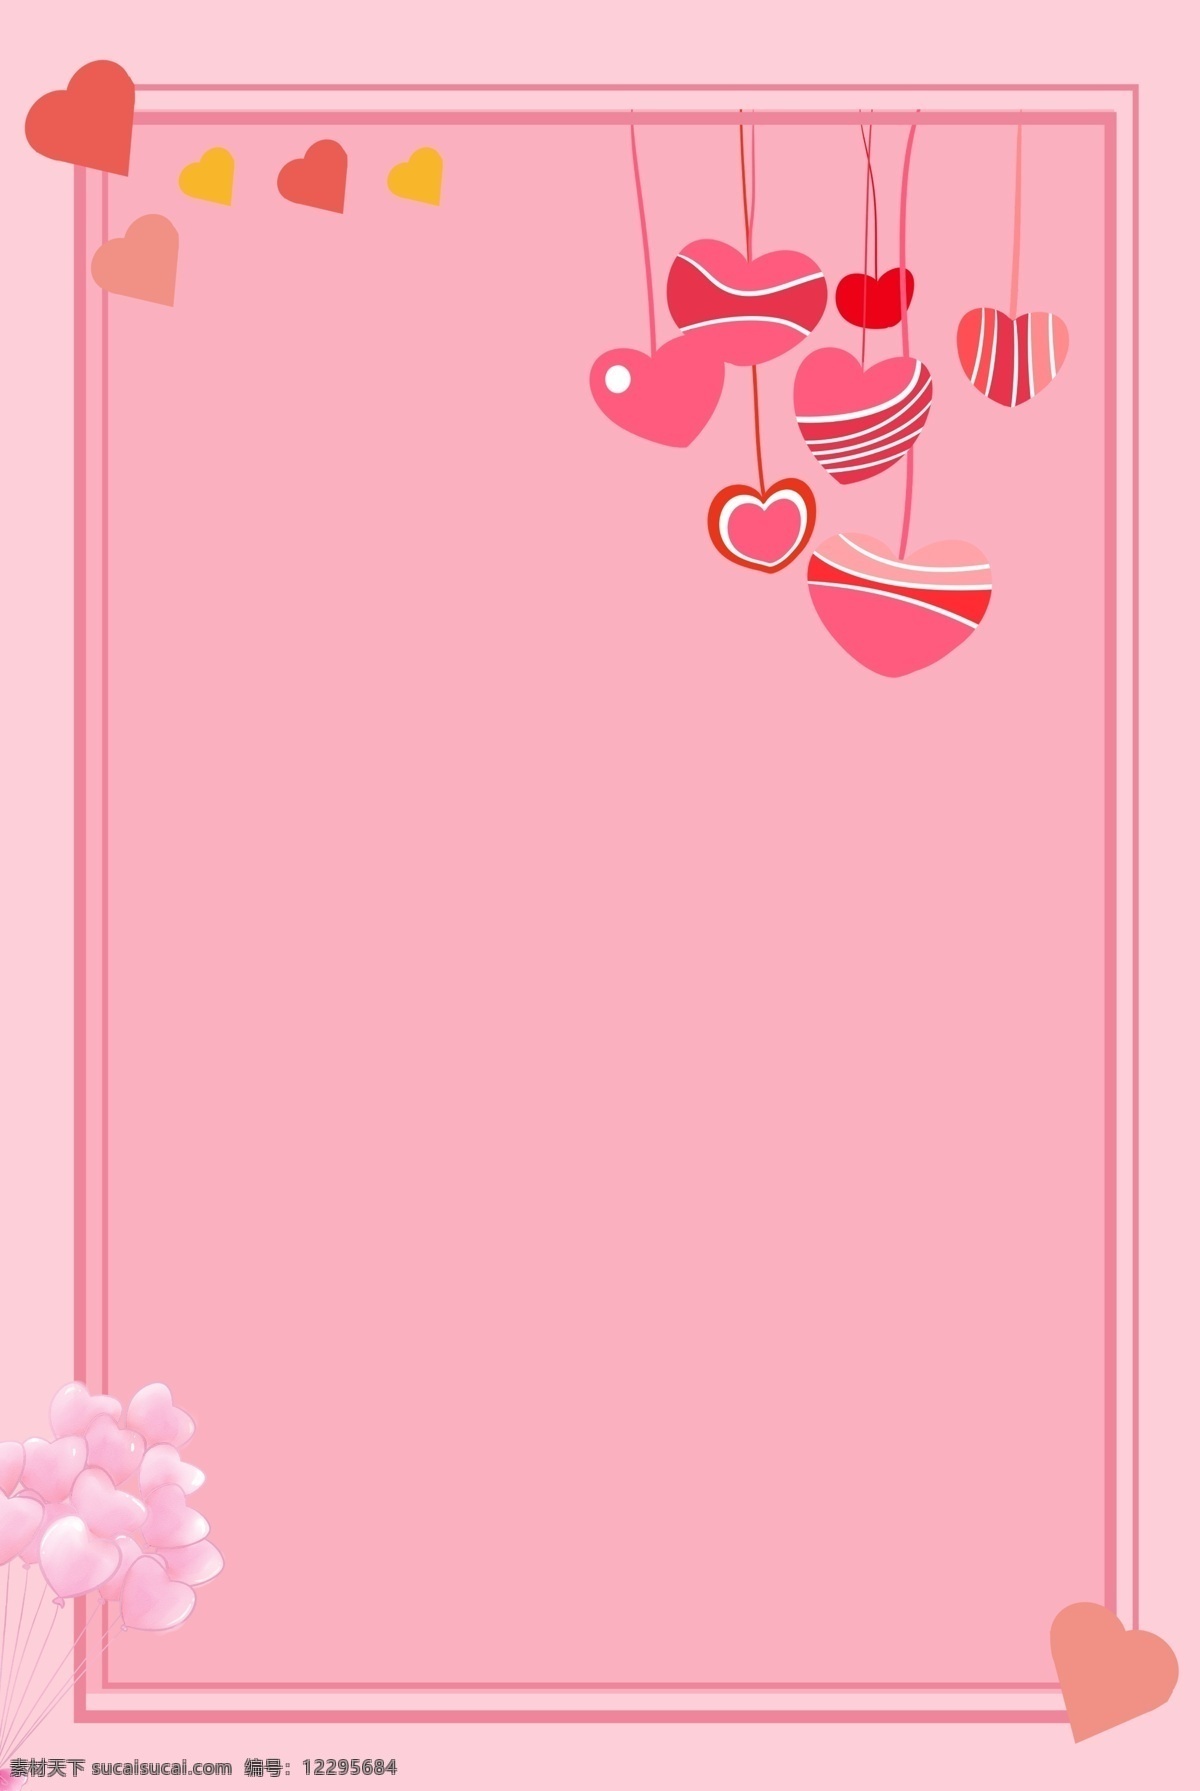 粉色 爱心 卡通 边框 背景 手绘 h5 广告 海报